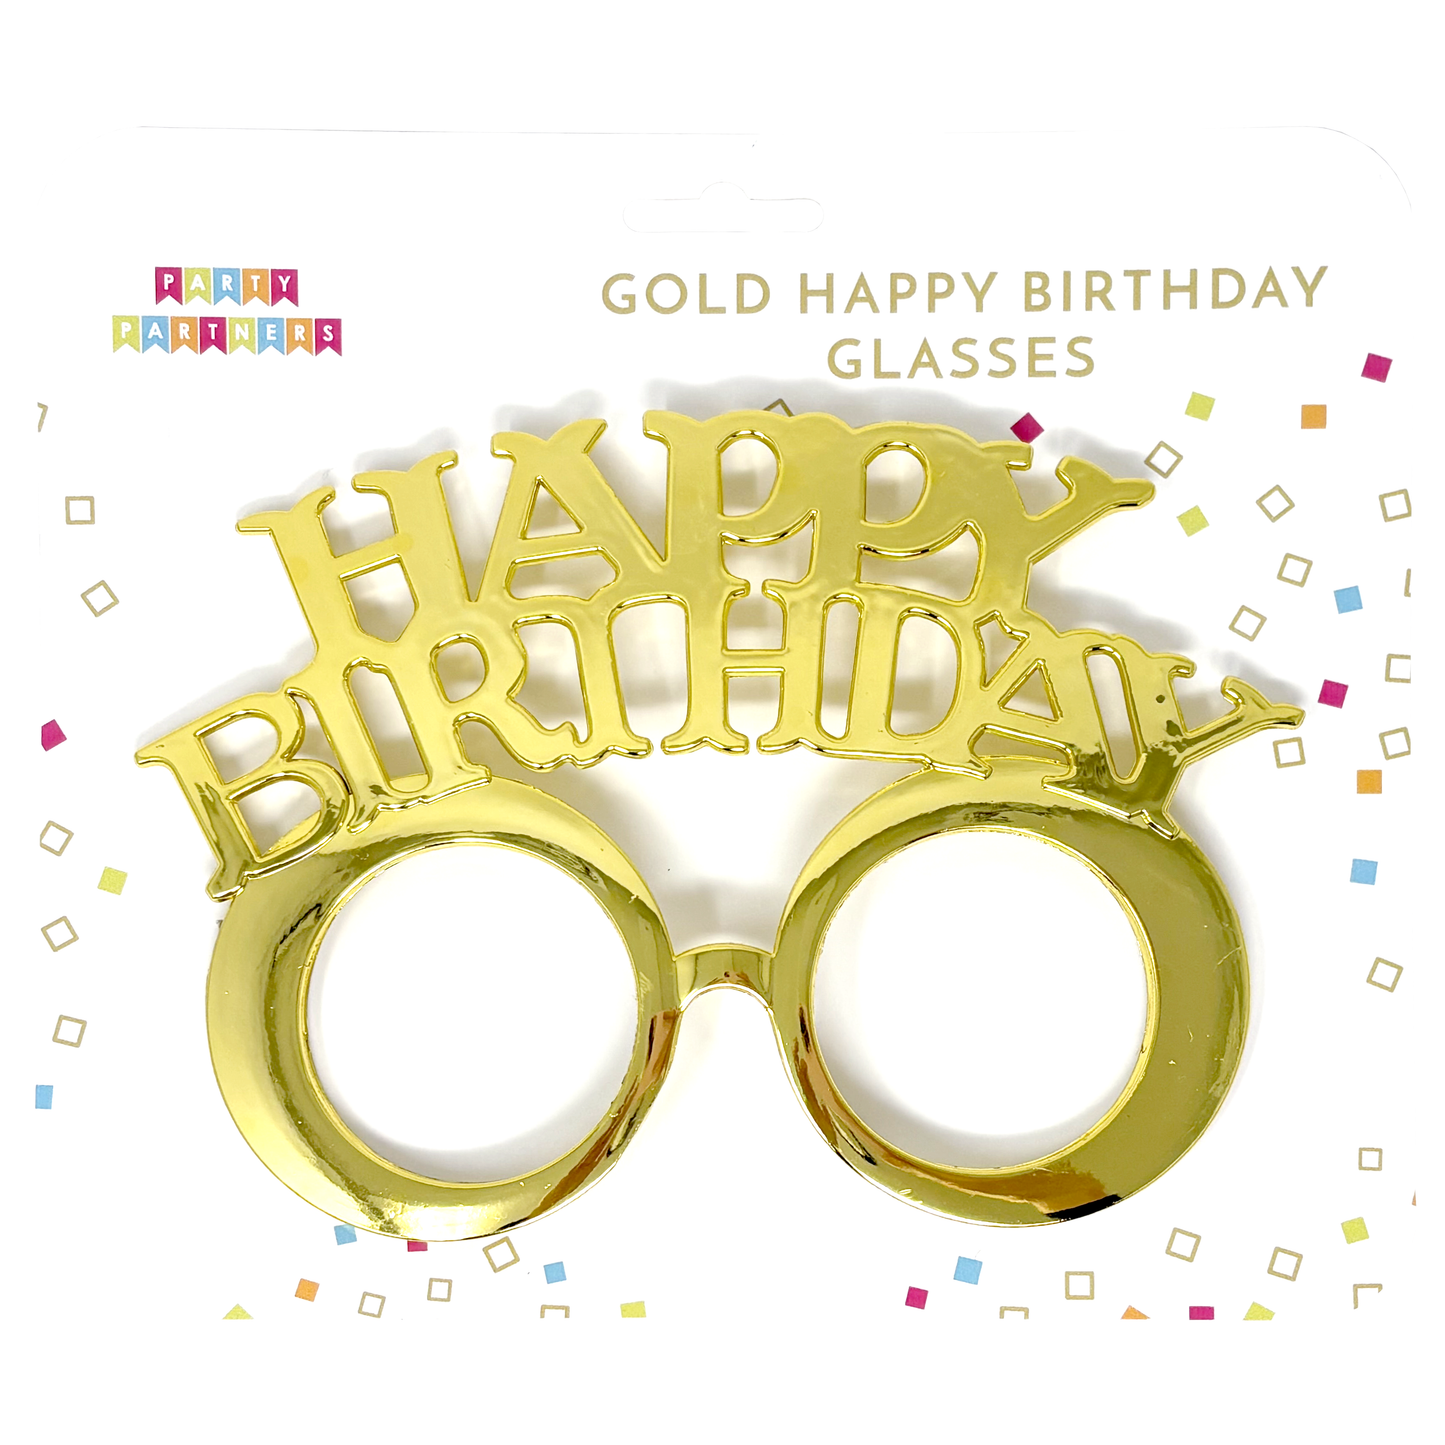 Gold Happy Birthday Glasses